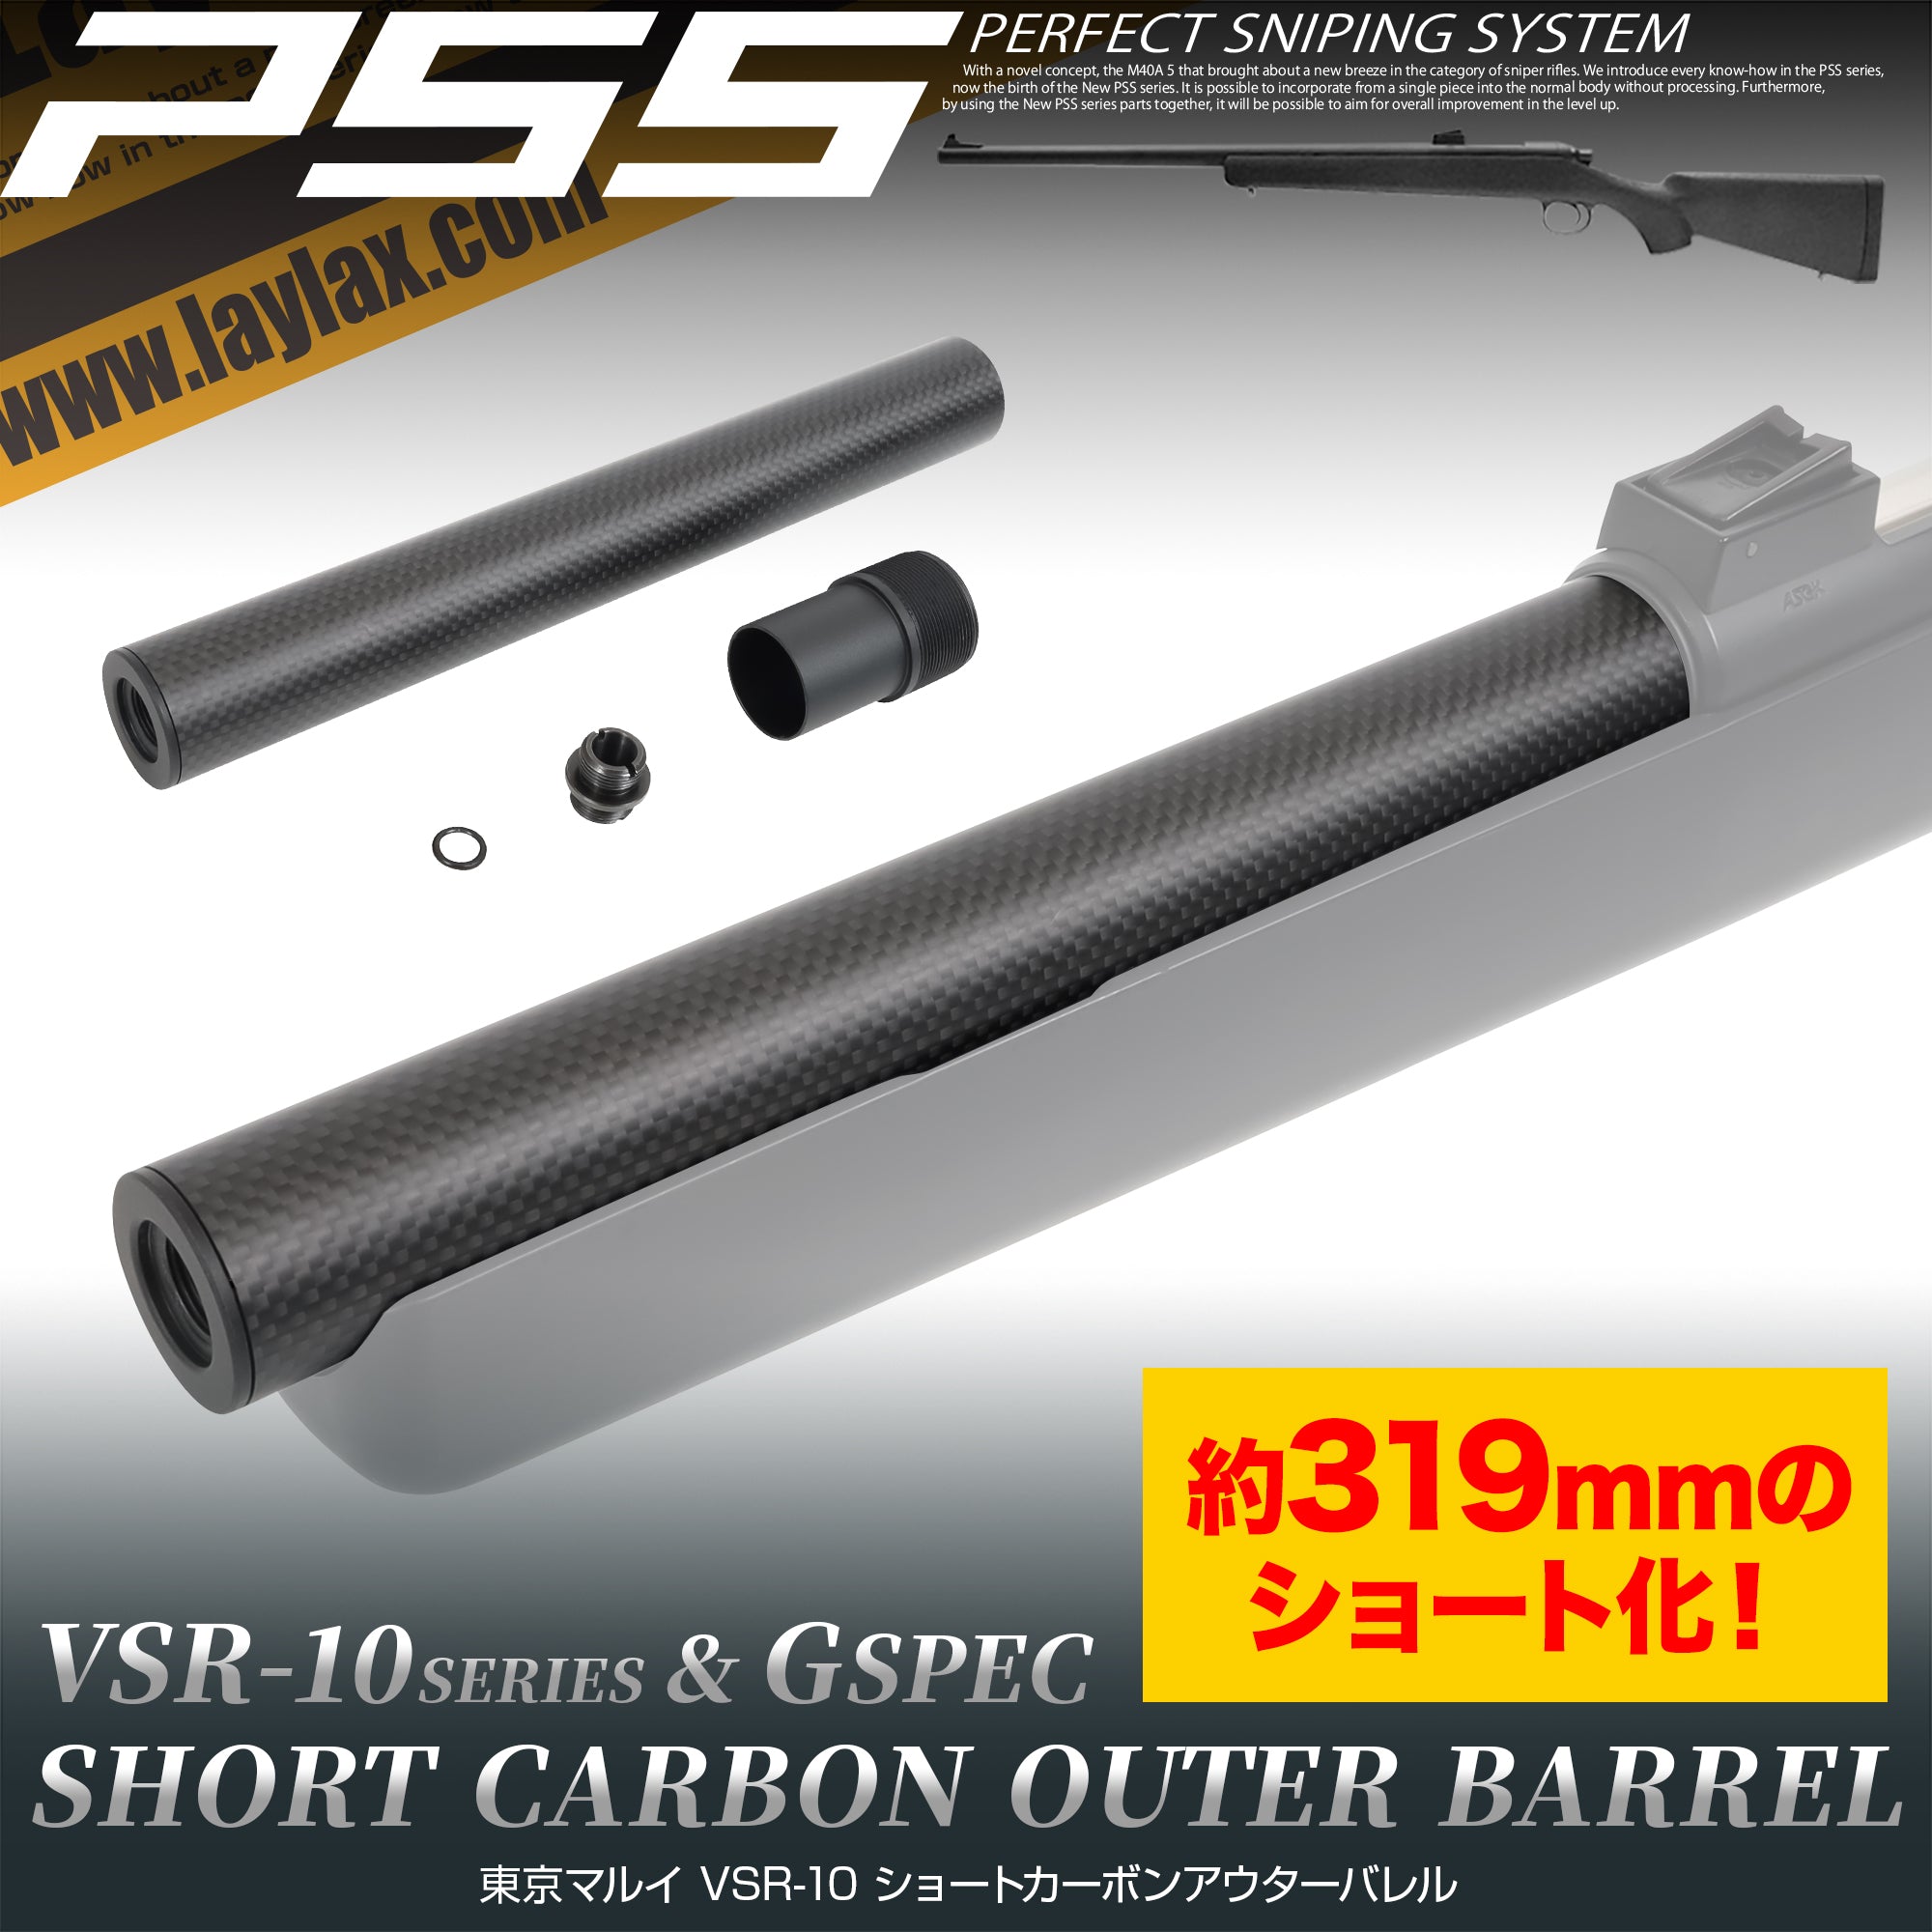 VSR-10 short carbon outer barrel [PSS].